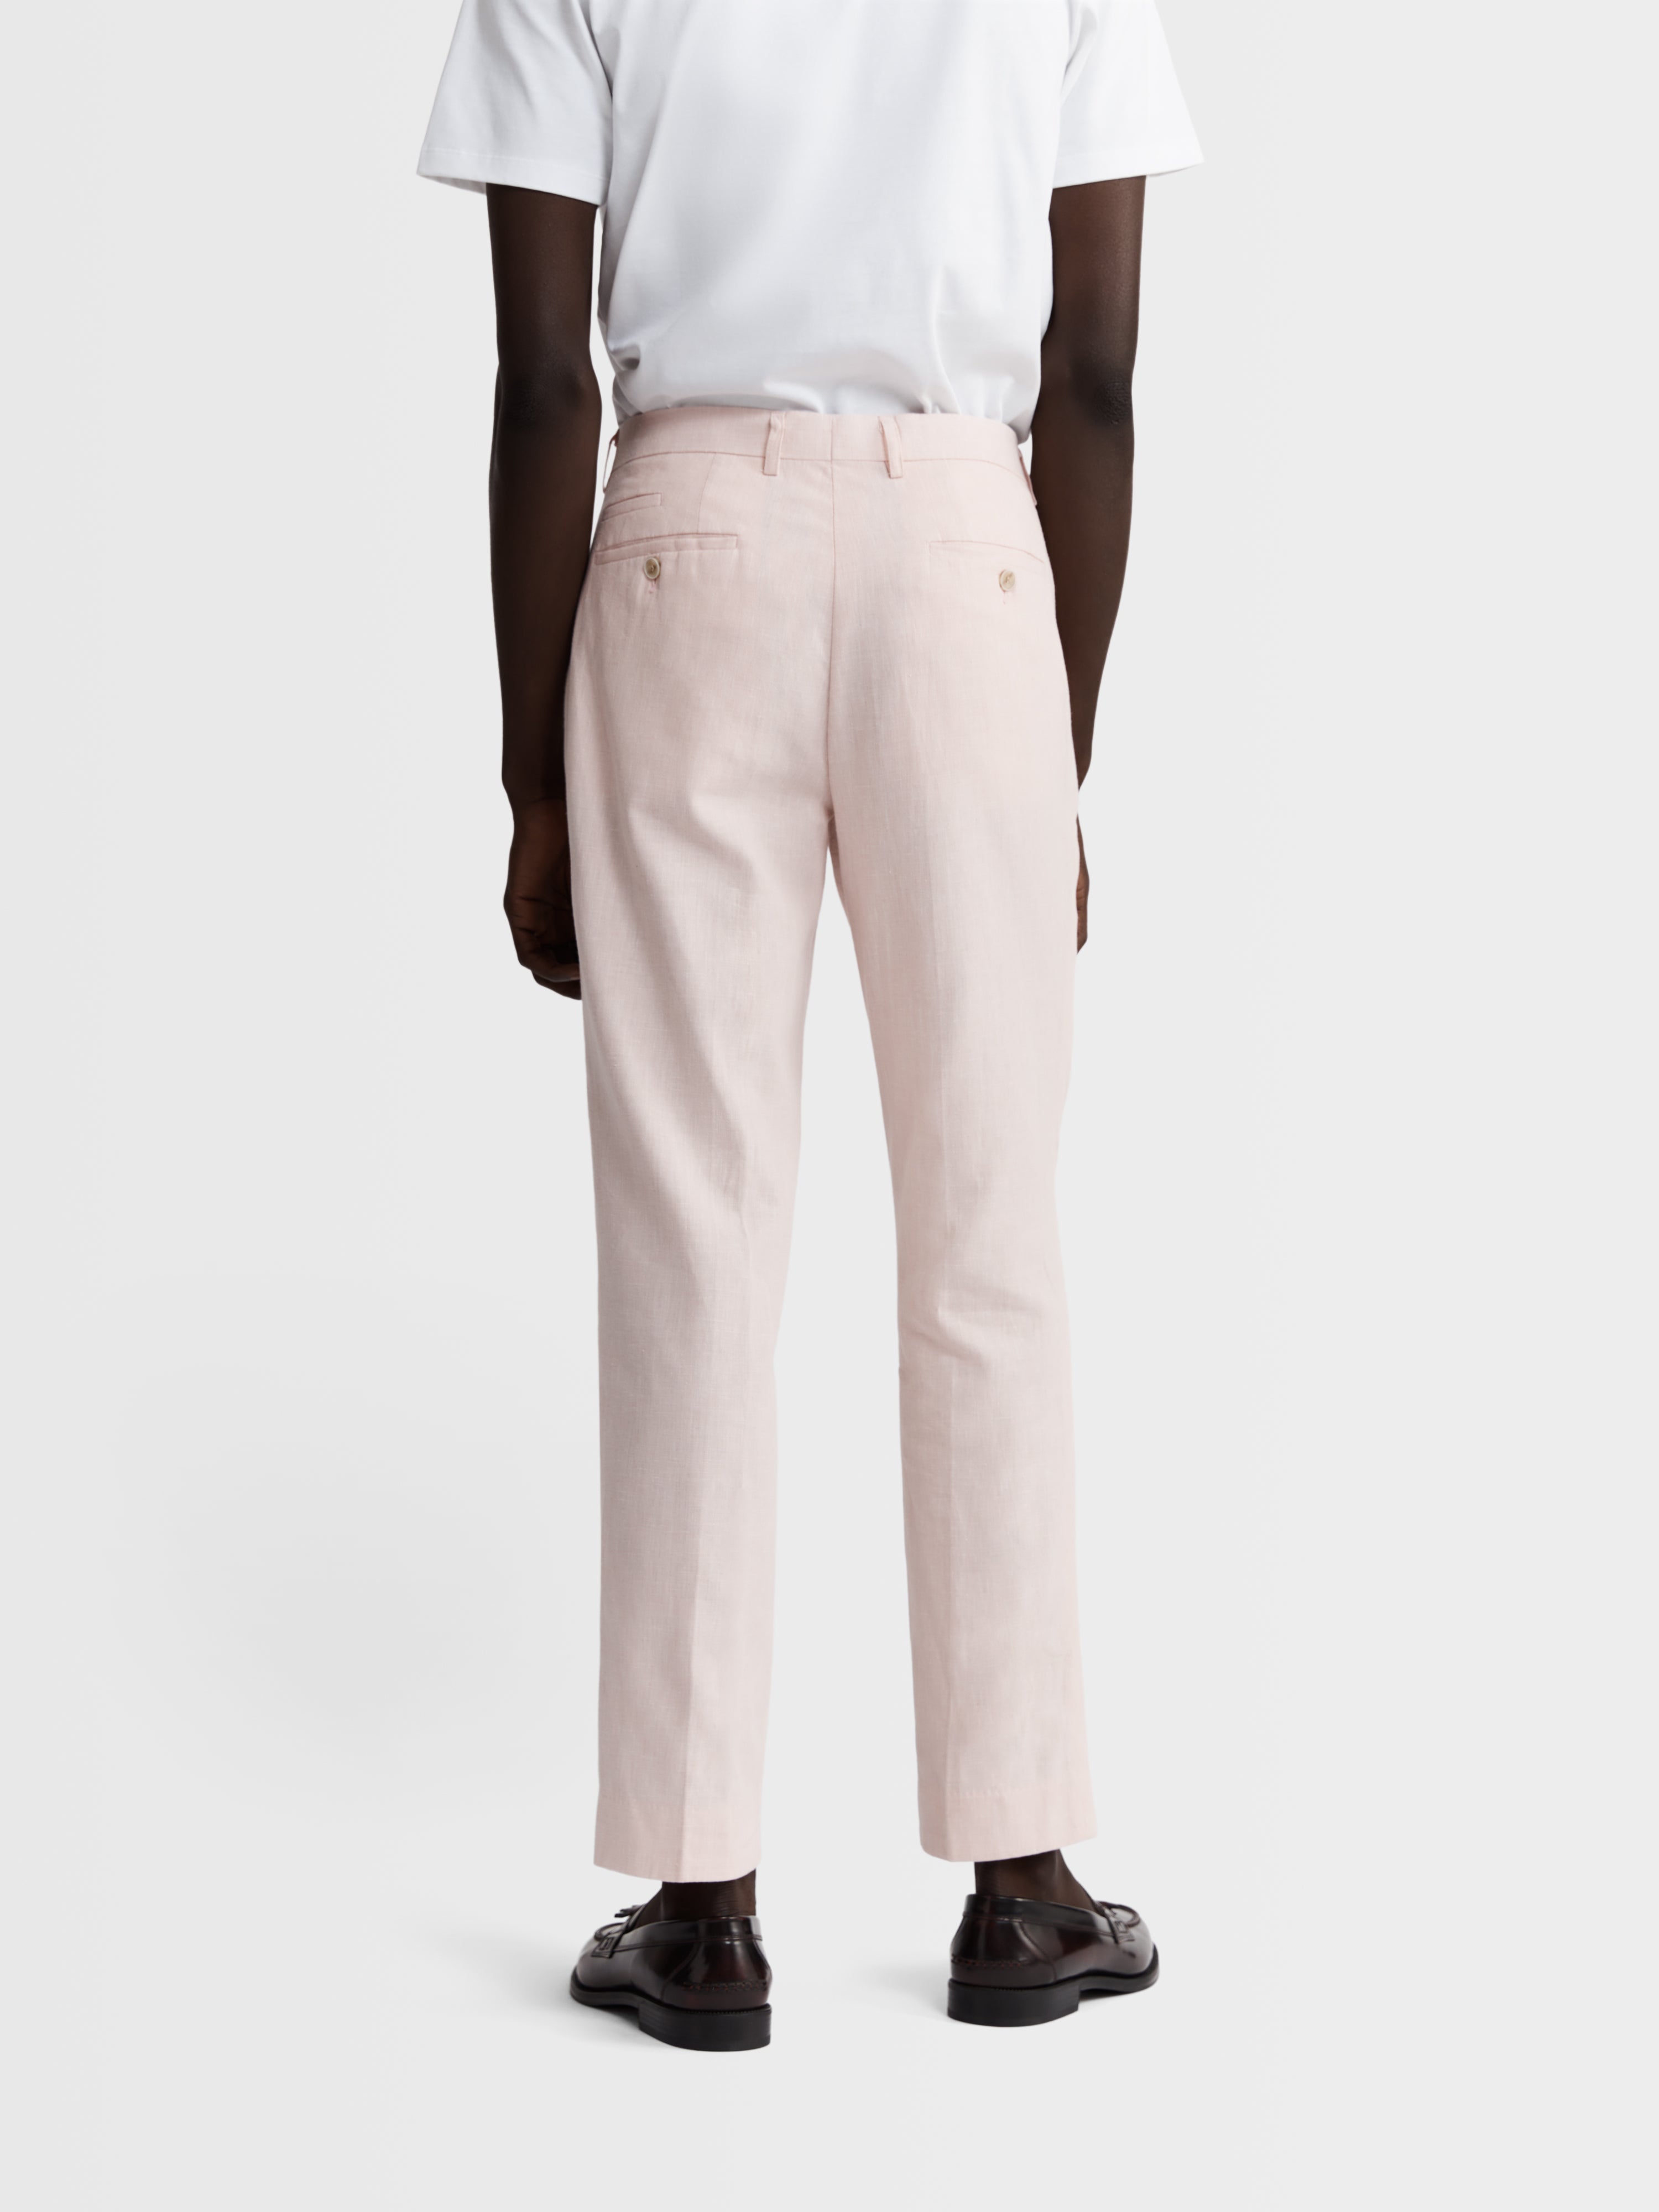 Slim Fit Slacks - Light pink - Men | H&M US